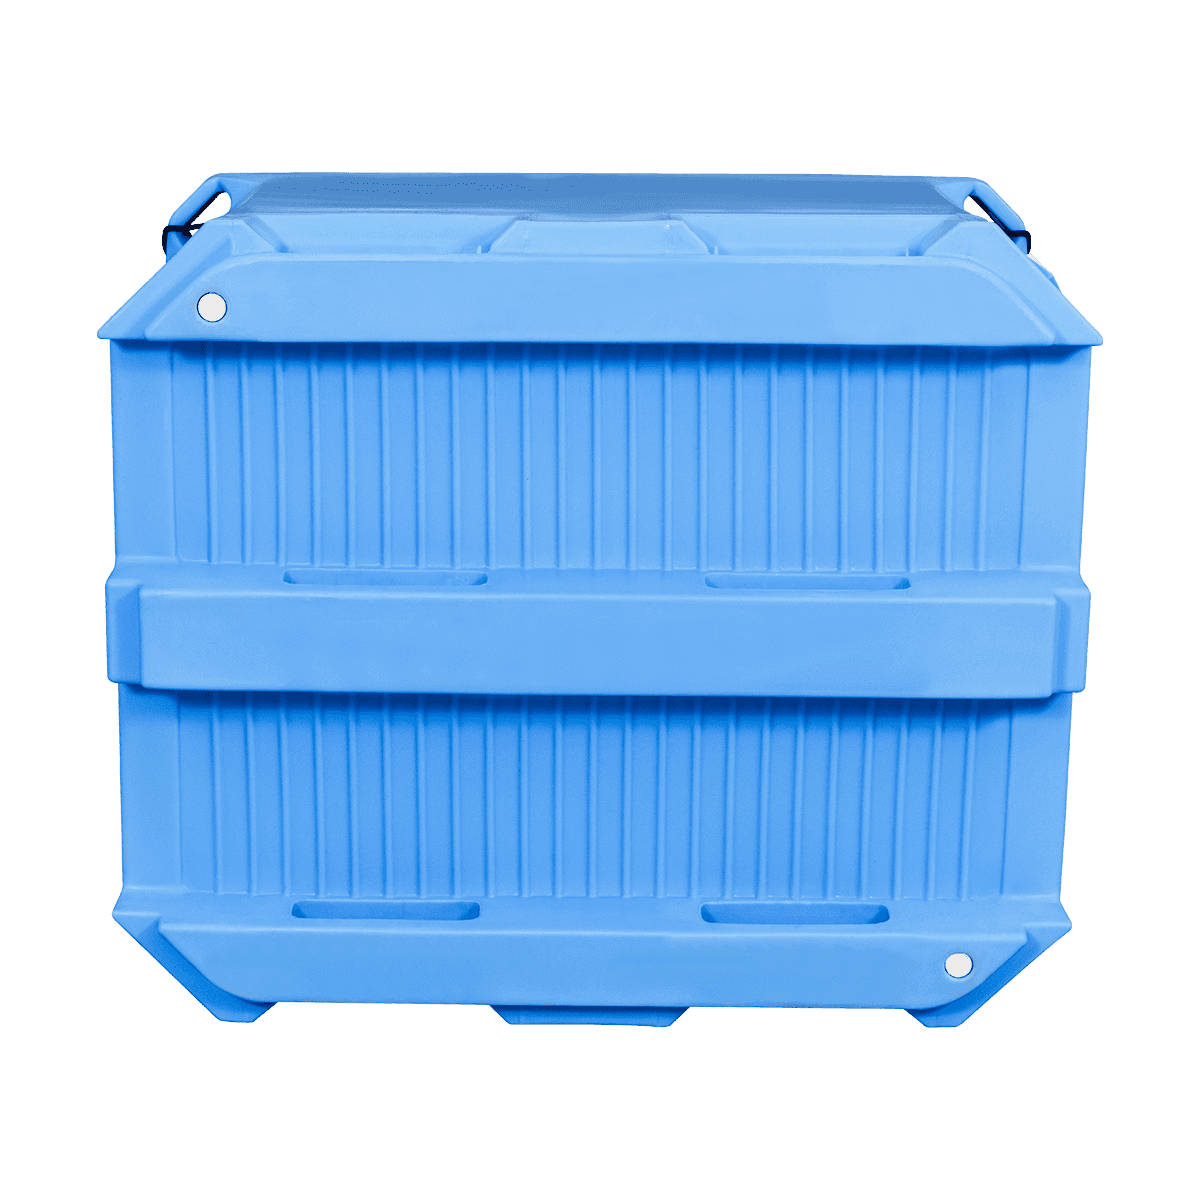 AF-660L حاويات بلاستيكية للاستخدام الصناعي للأطعمة البحرية